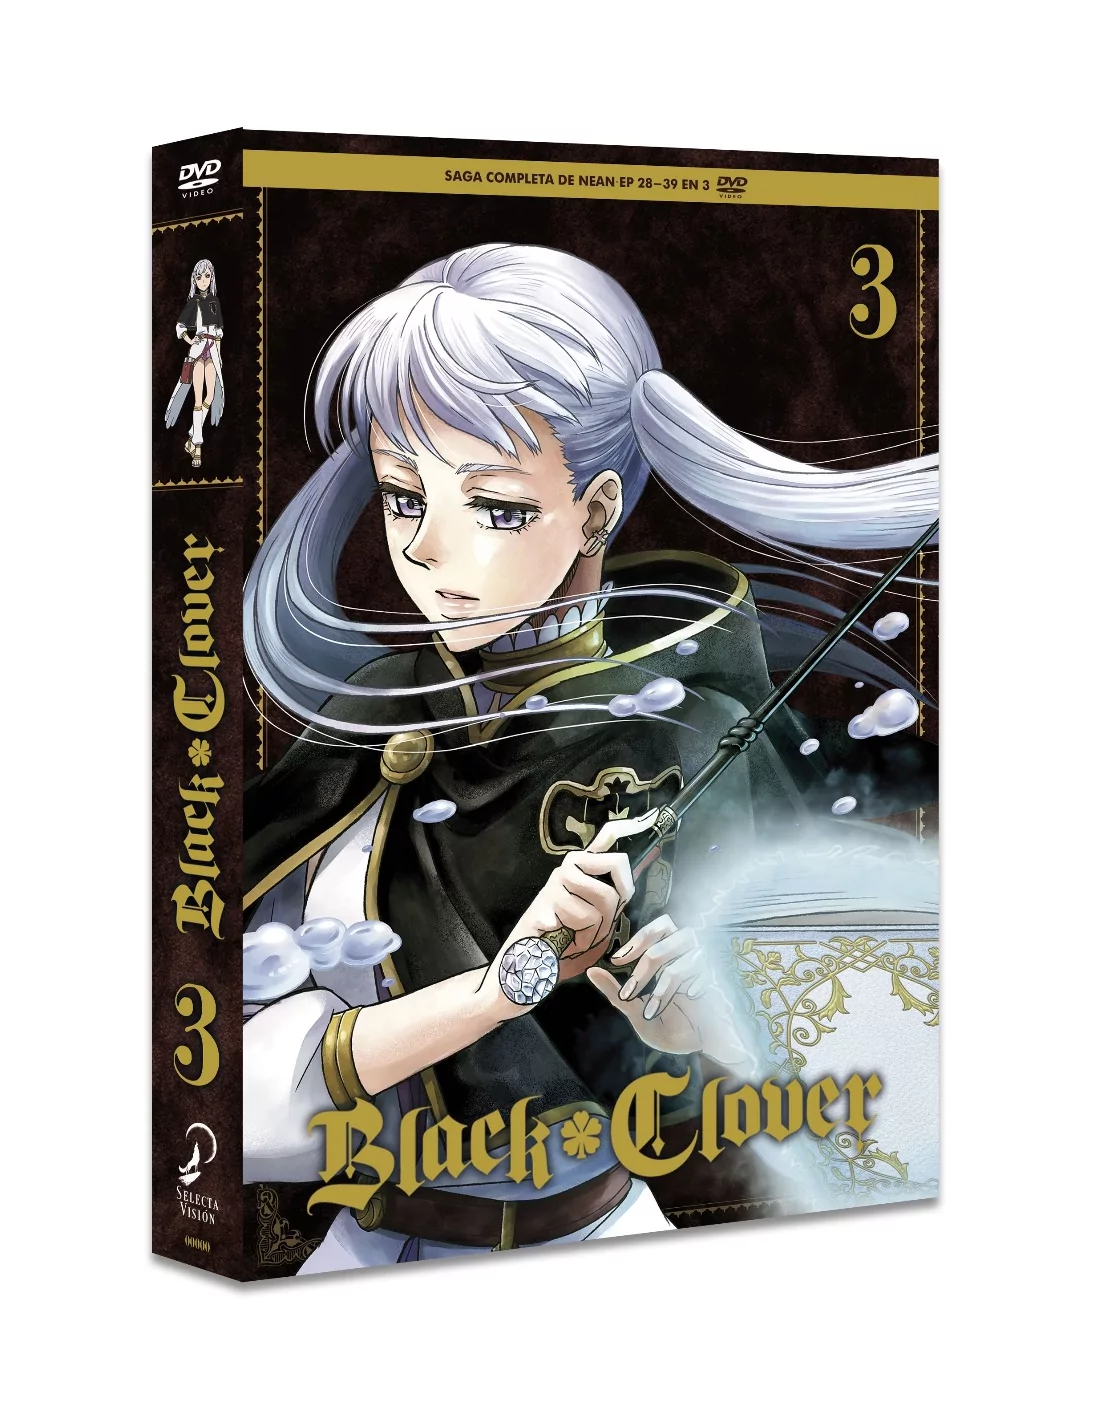 BLACK CLOVER episodios 28 a 39 (Saga Completa de Nean) DVD